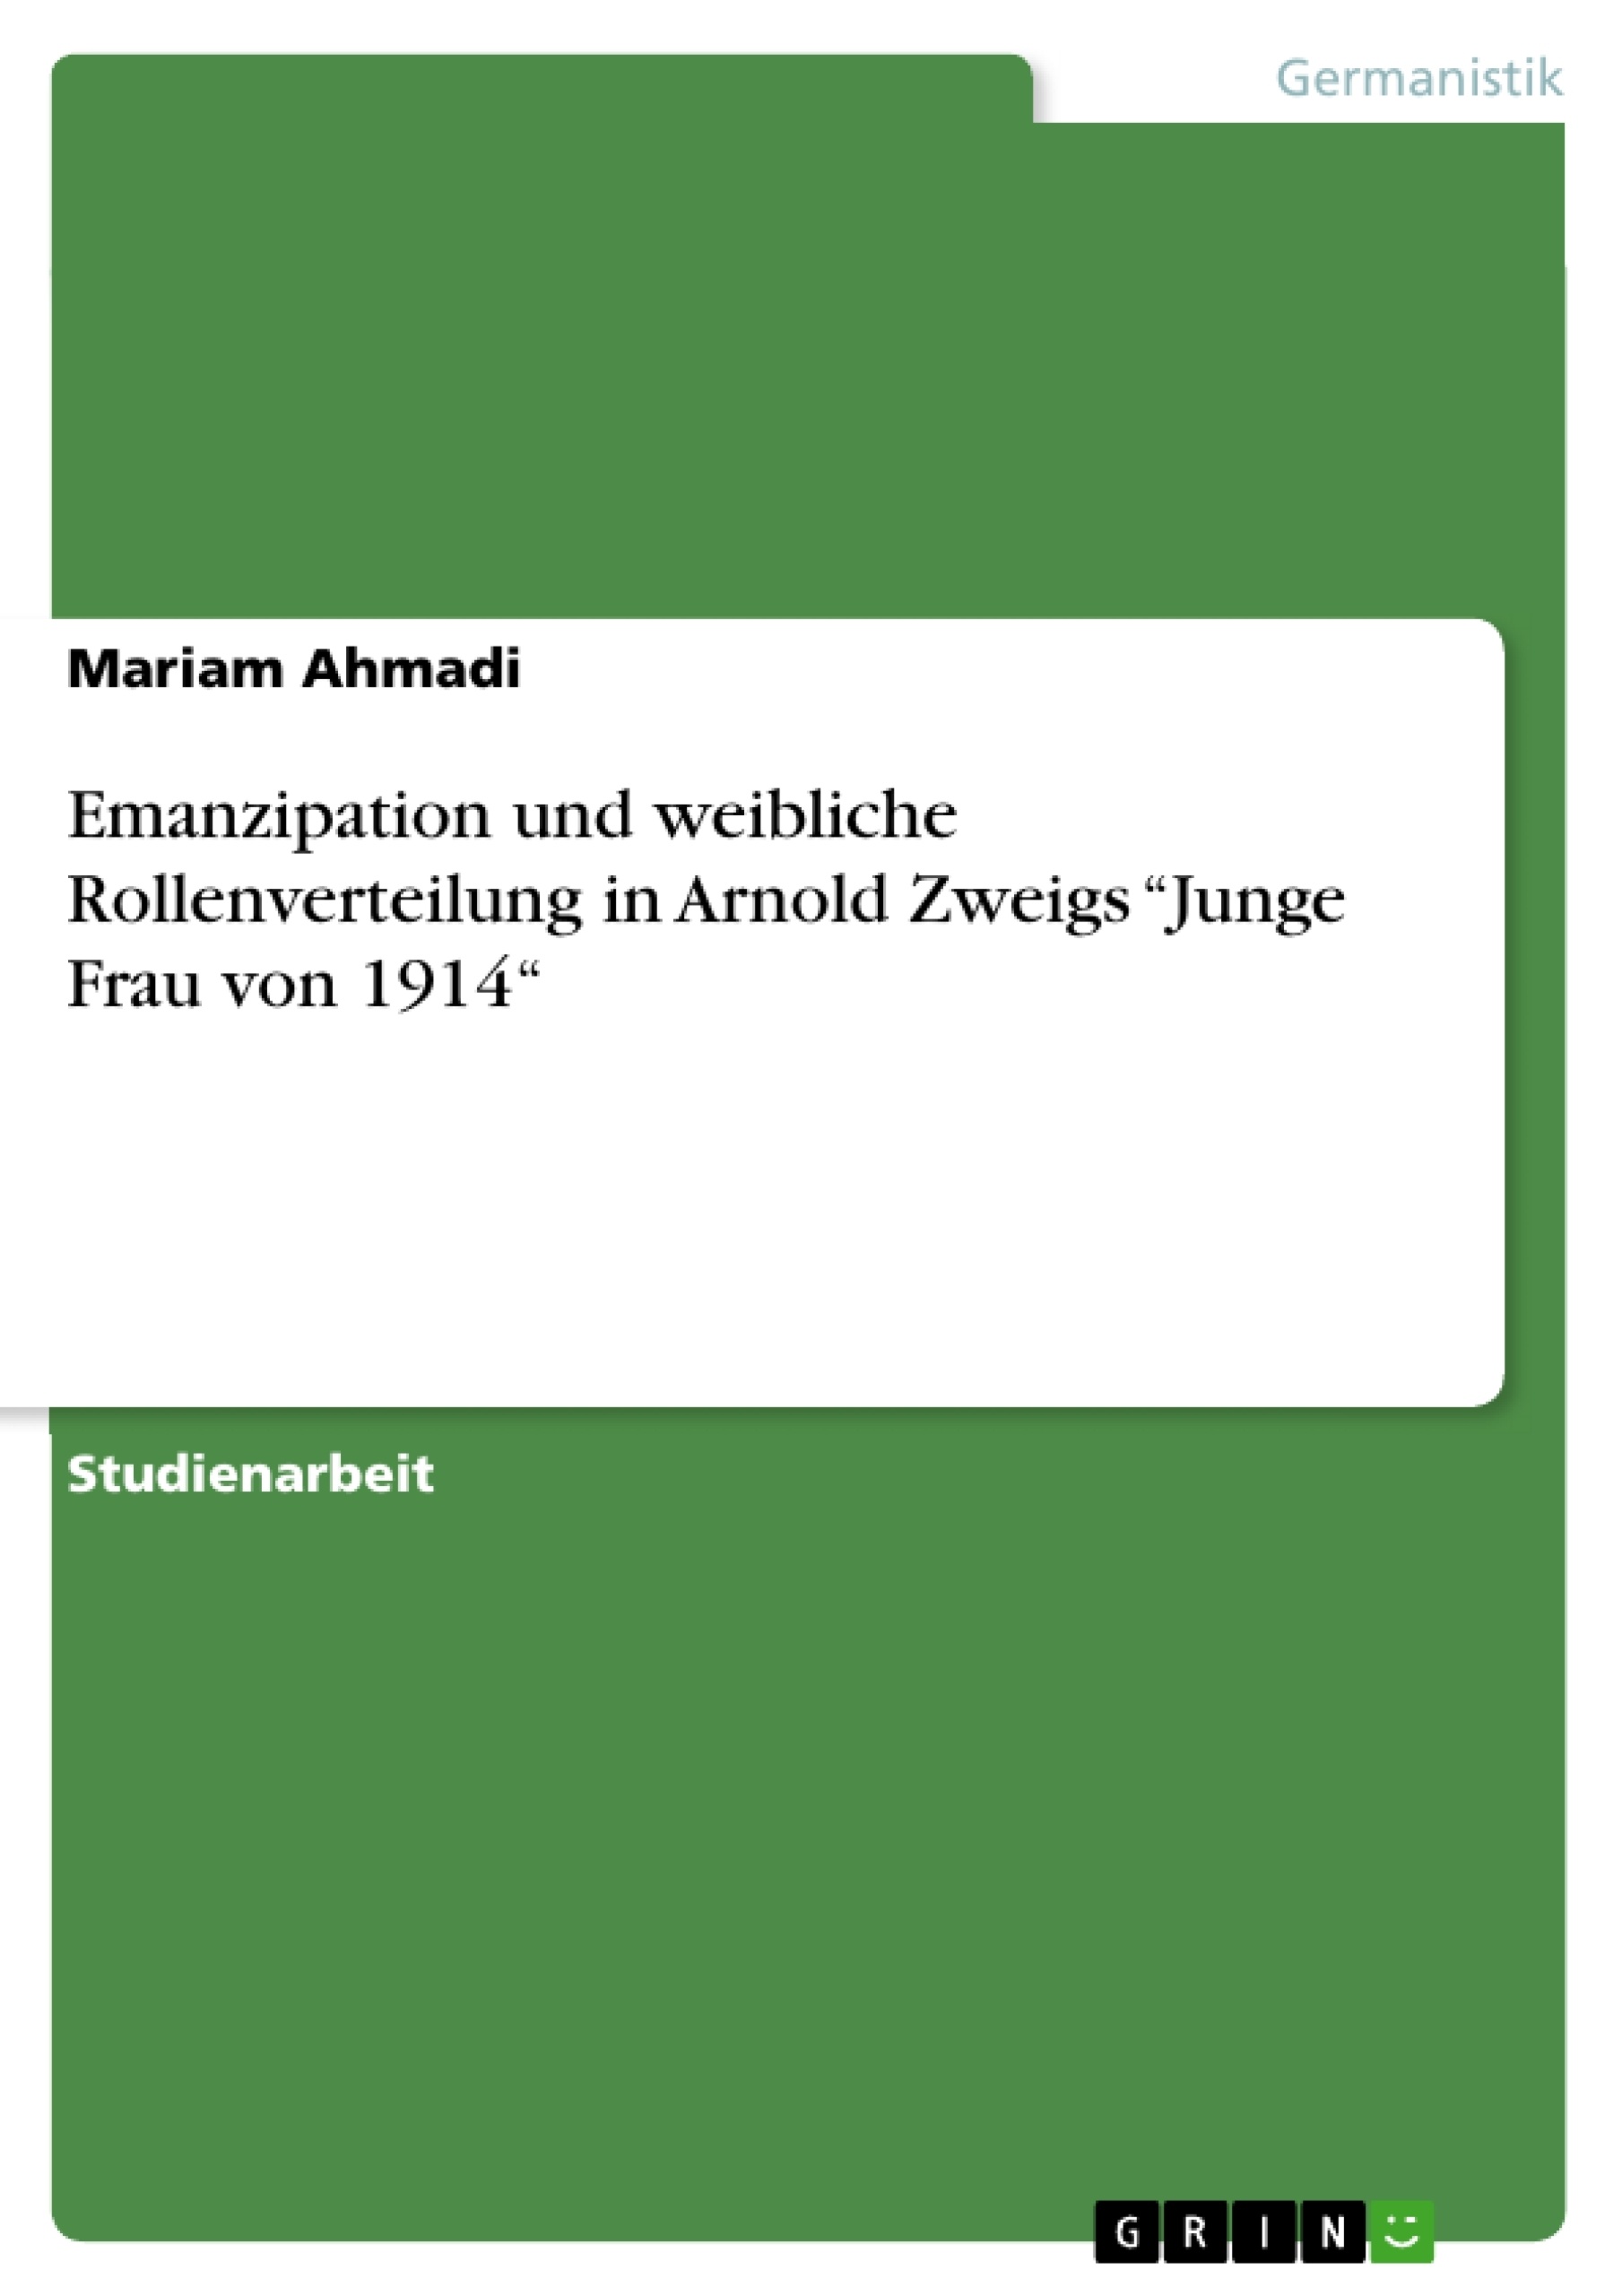 Título: Emanzipation und weibliche Rollenverteilung in Arnold Zweigs “Junge Frau von 1914“